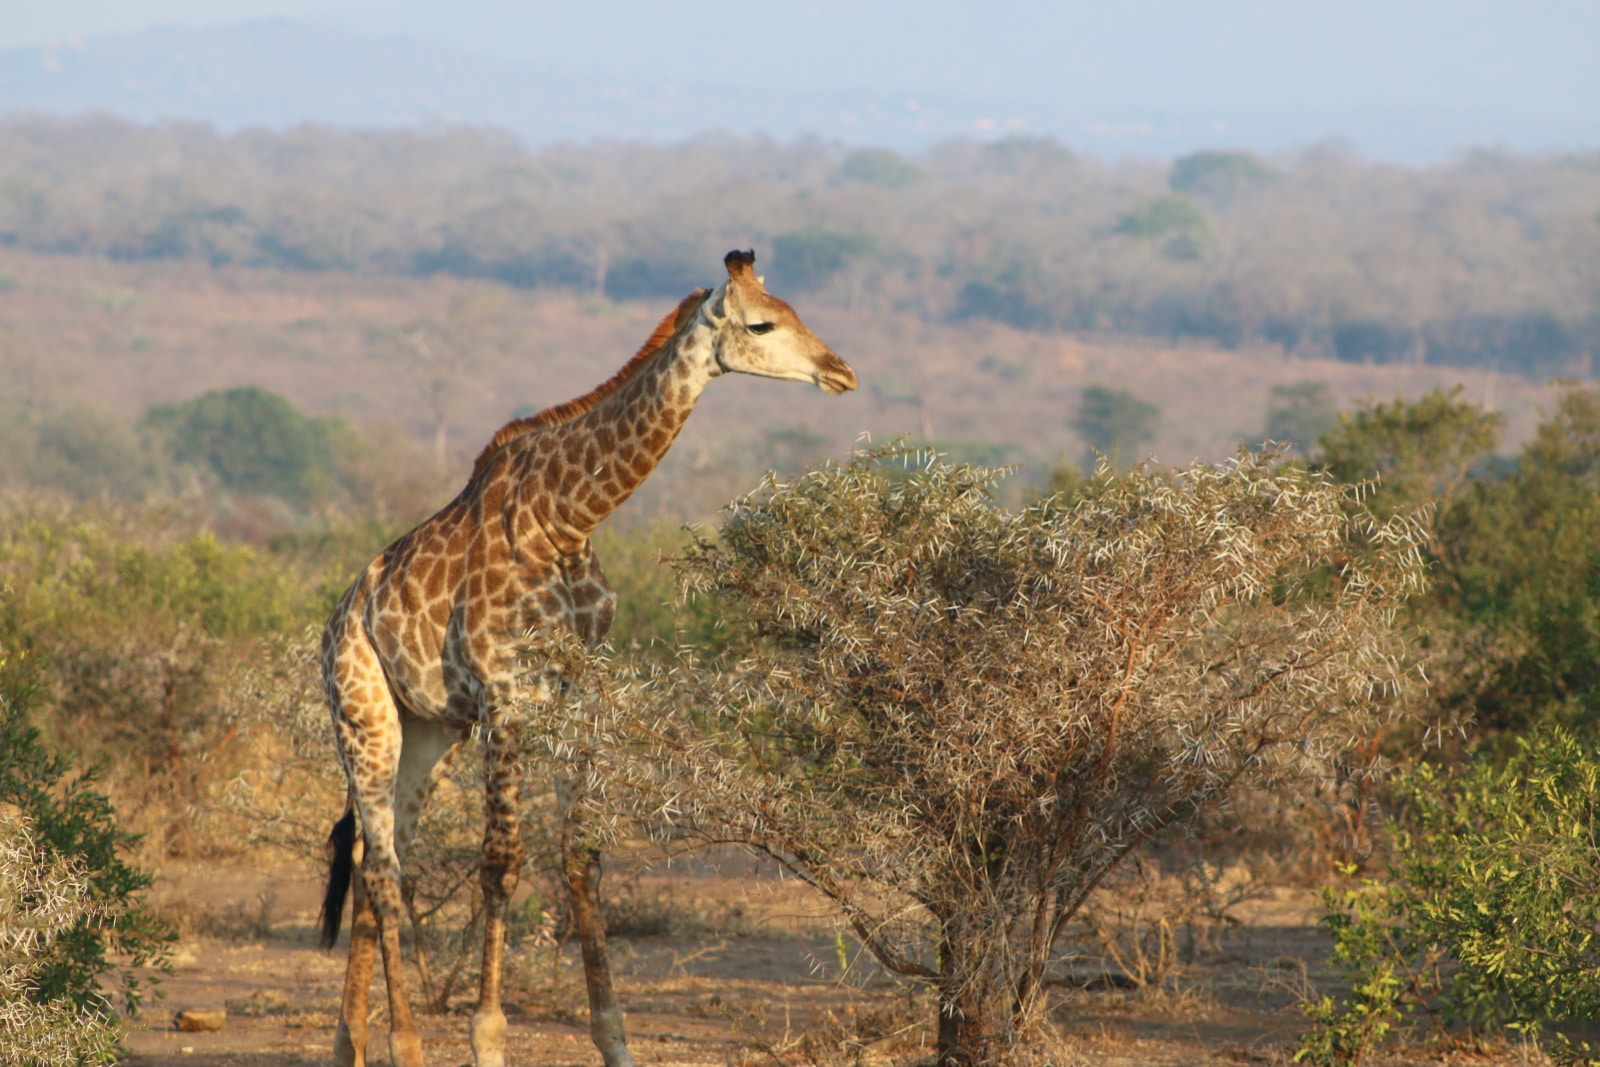 Lone Giraffe in Eswatini